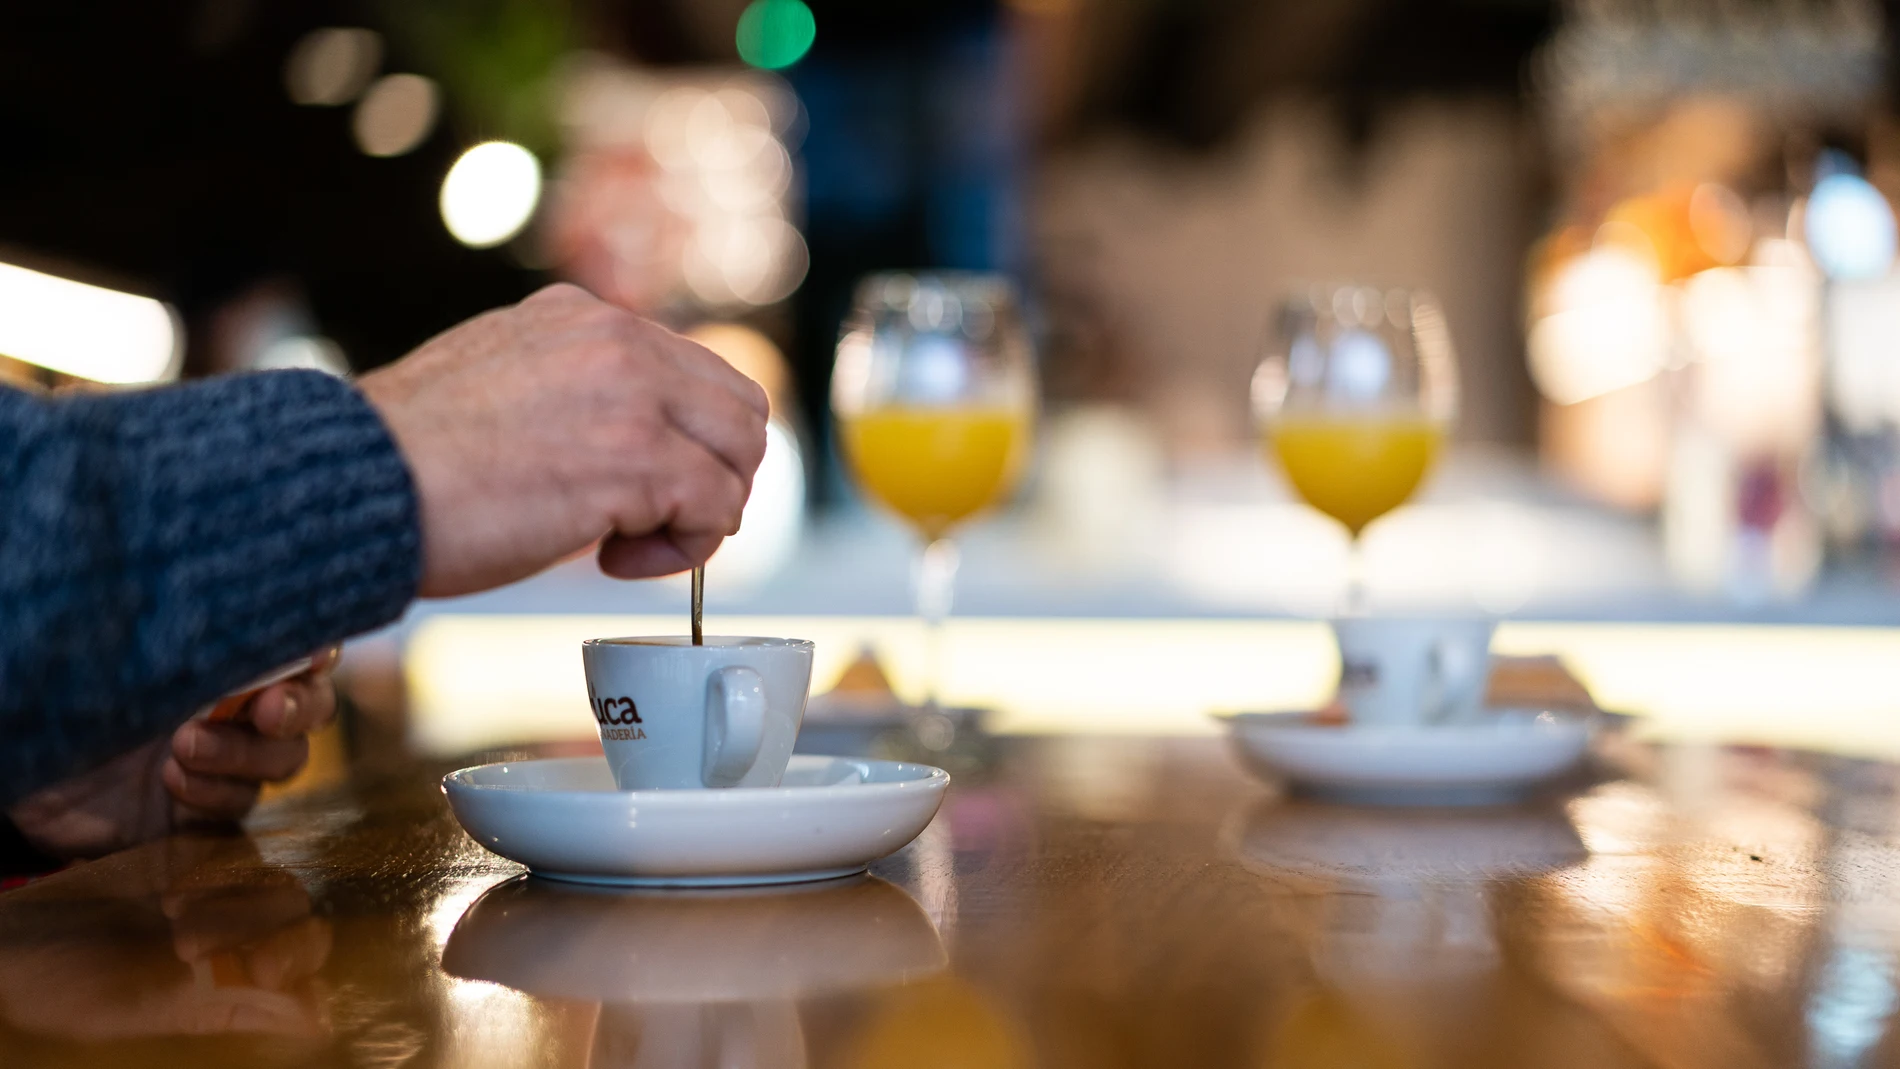 Los autores observaron que las personas que consumı́an café tenı́an un menor riesgo de presentar deterioro cognitivo en comparación con aquellas que no lo tomaban